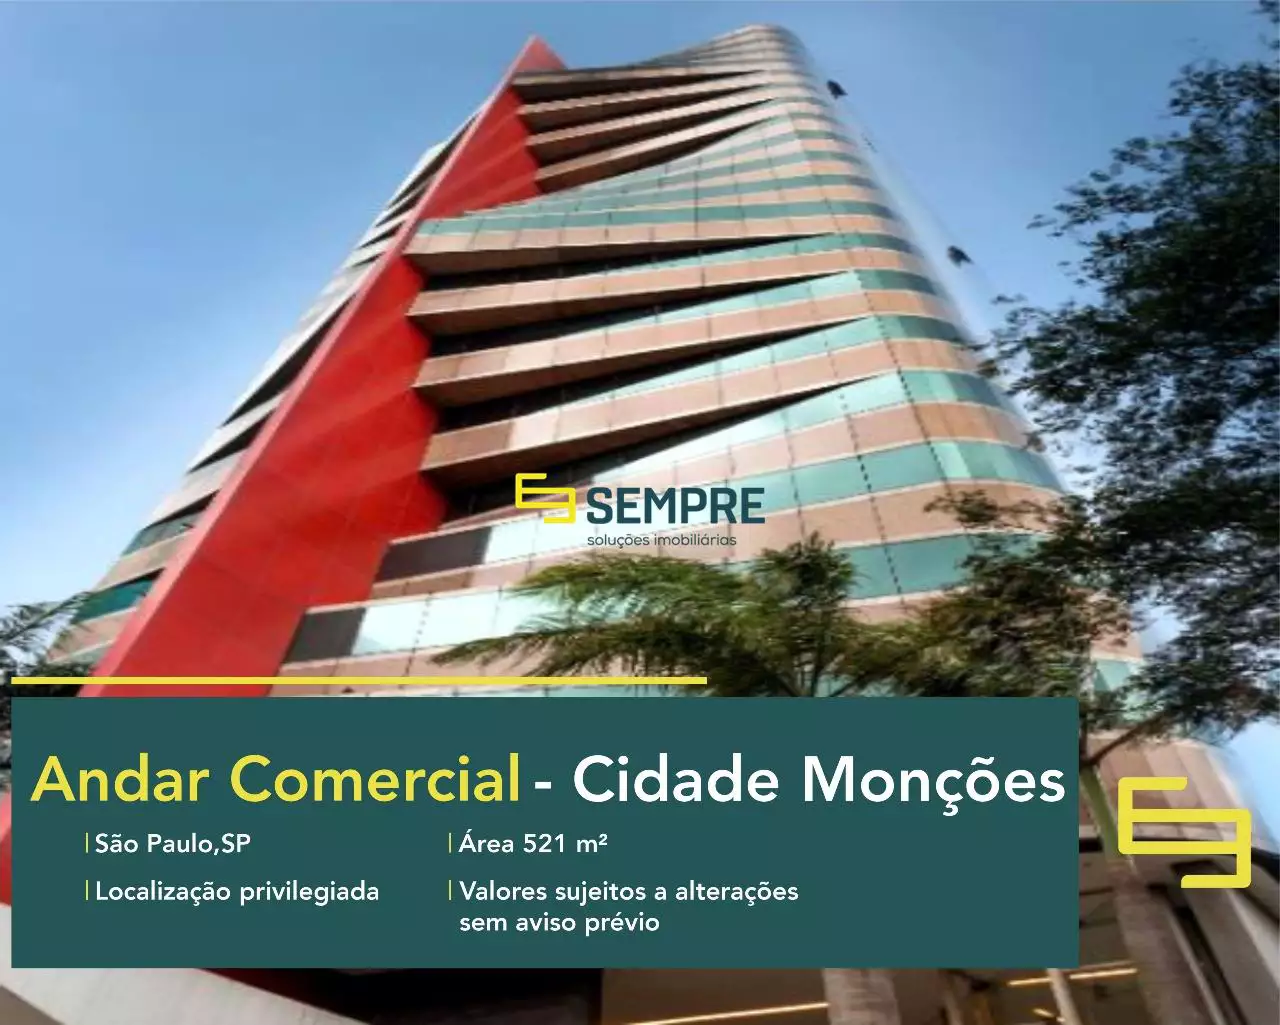 Andar corporativo no Edifício Berrini 500 para alugar em São Paulo, em excelente localização. O ponto comercial conta com área de 521 m².